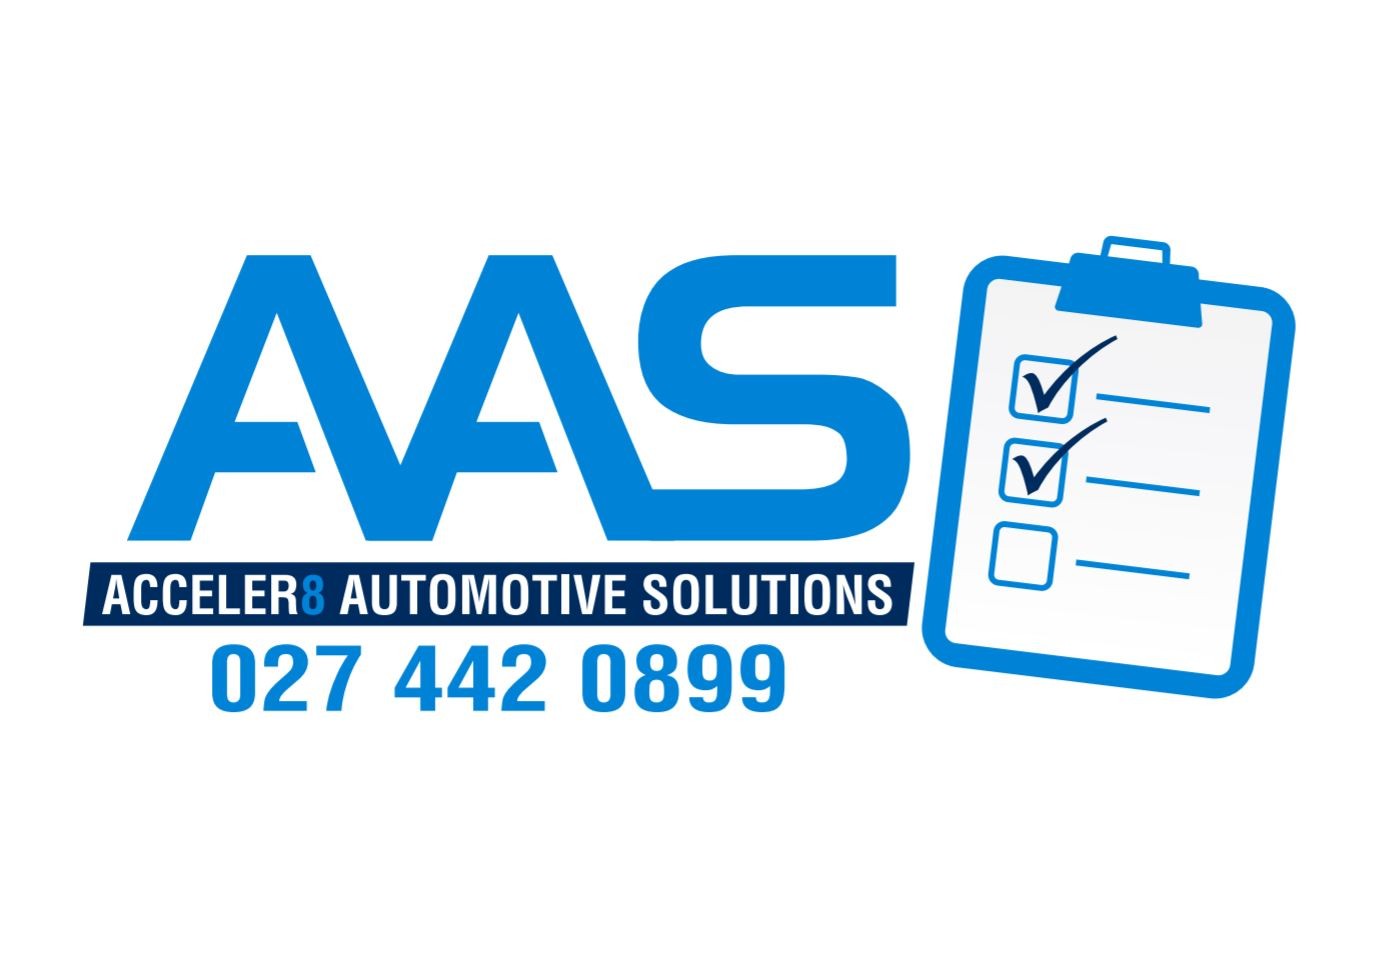 Acceler8 Automotive Solutions (A.A.S)